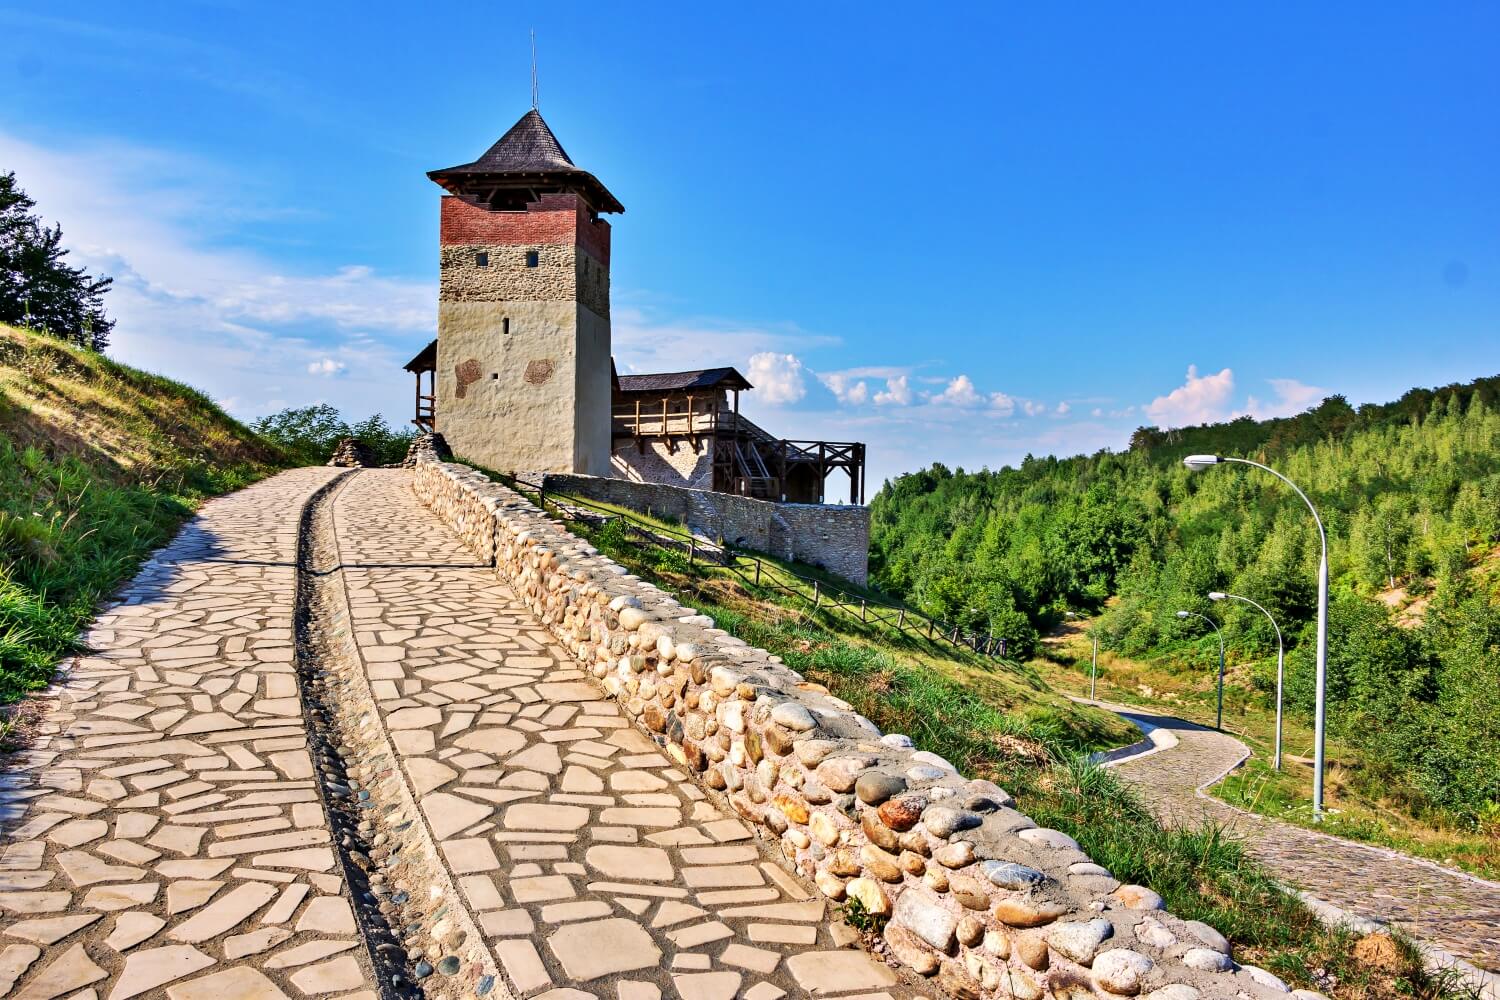 The Mălăiești Fortress